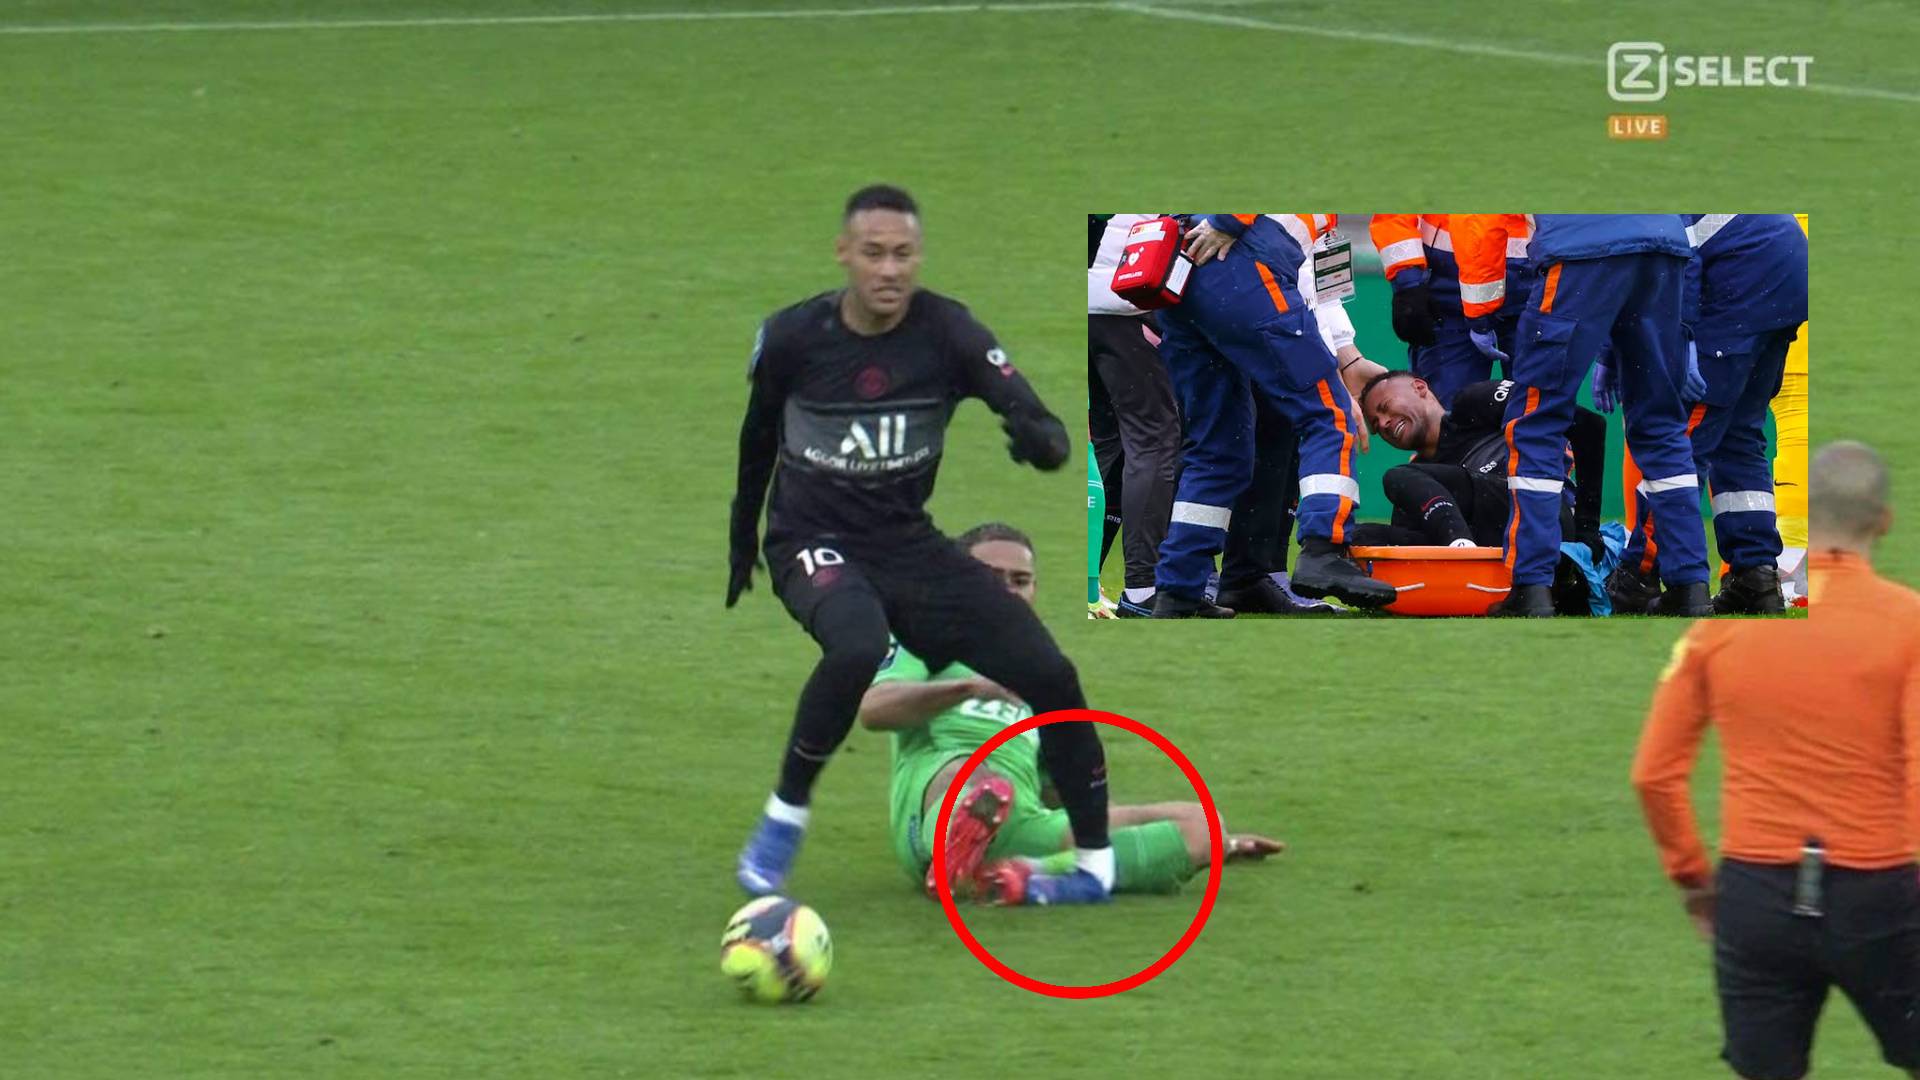 Bunyi ‘Krukk’, Kecederaan Menakutkan Neymar Di Ligue 1